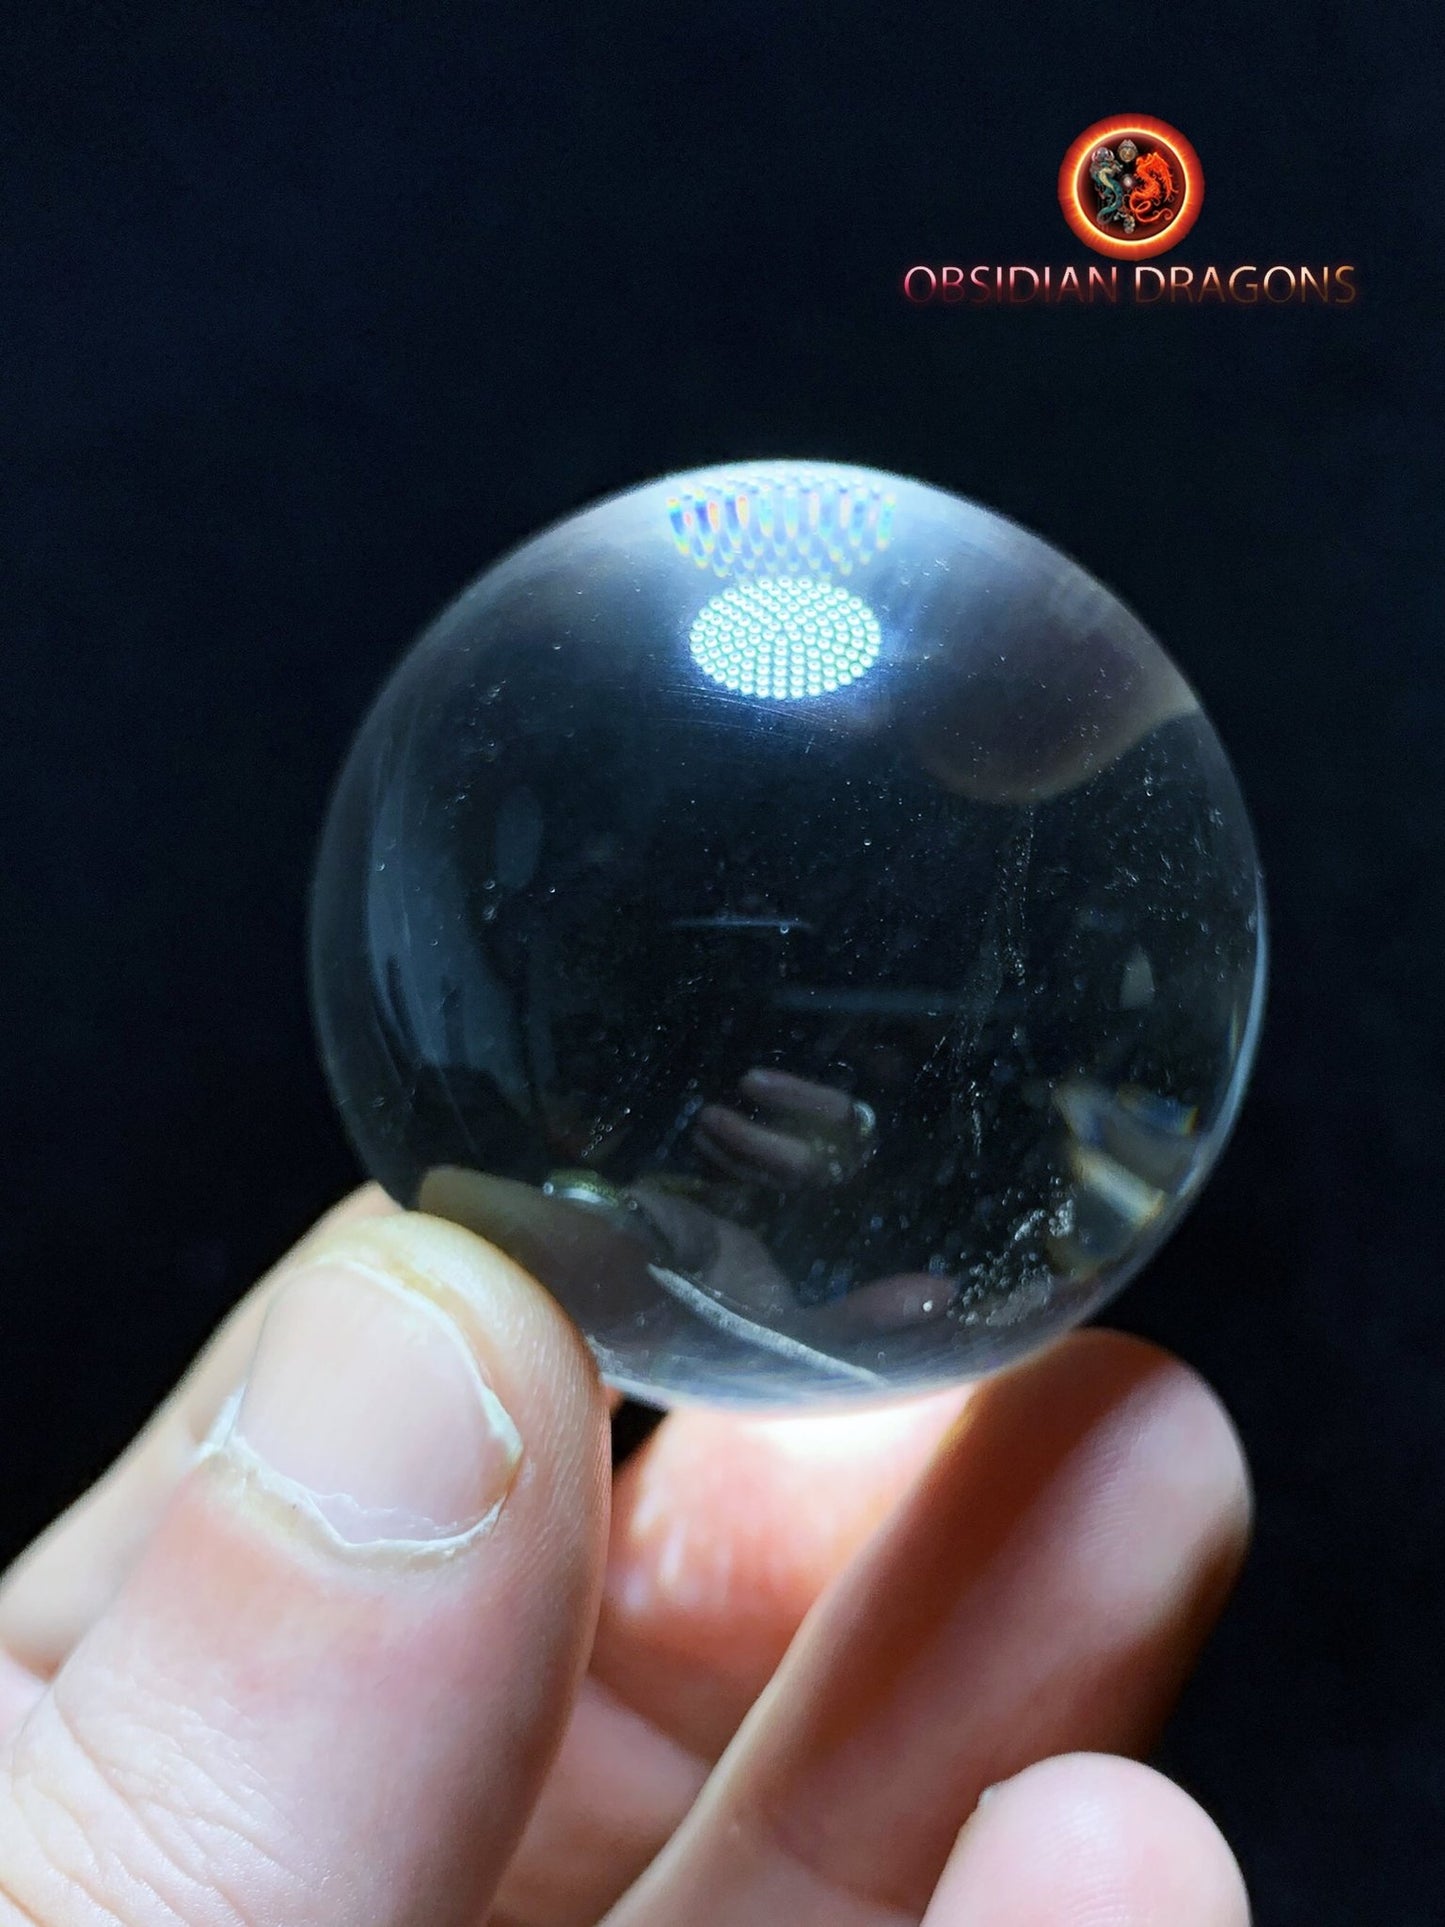 Sphère, boule de cristal. Cristal de Roche du Bresil, qualité excellente. Beaux givres en inclusions. Cristal de roche naturel. 0,137kg - obsidian dragon